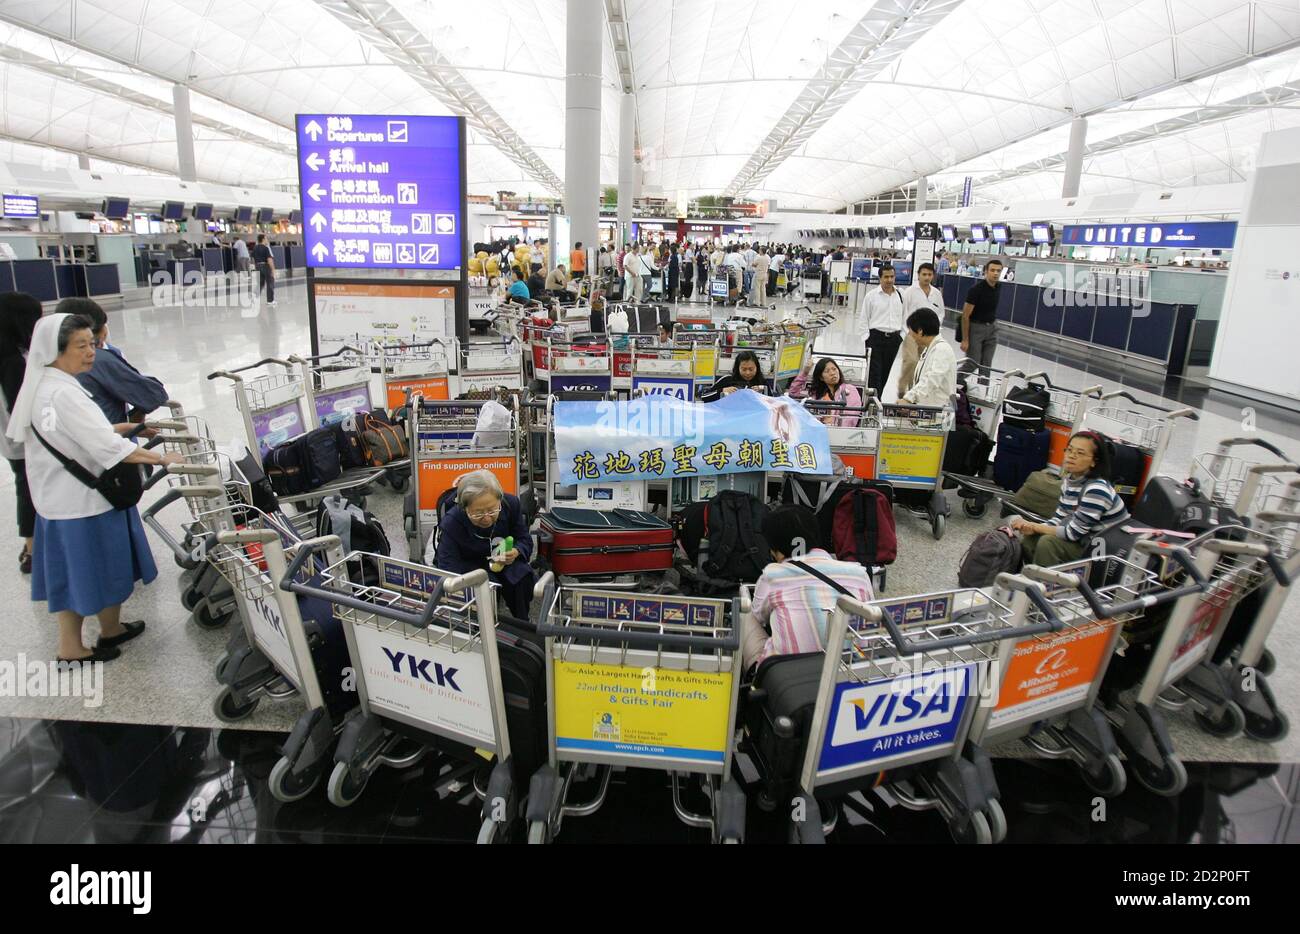 Passagiere warten auf den Abflug am internationalen Flughafen Hongkong am 3. August 2006. Obwohl Hongkong wahrscheinlich von Prapiroon nicht direkt getroffen werden kann, haben starke Winde 159 Flüge verzögert, während 92 gestrichen und 70 an andere Orte umgeleitet wurden, so die Flughafenbehörde. Rund 3,000 Passagiere wurden am Flughafen angesetzt, weitere 300 Flüge dürften bis Mitternacht unterbrochen sein. REUTERS/Paul Yeung (HONGKONG) Stockfoto